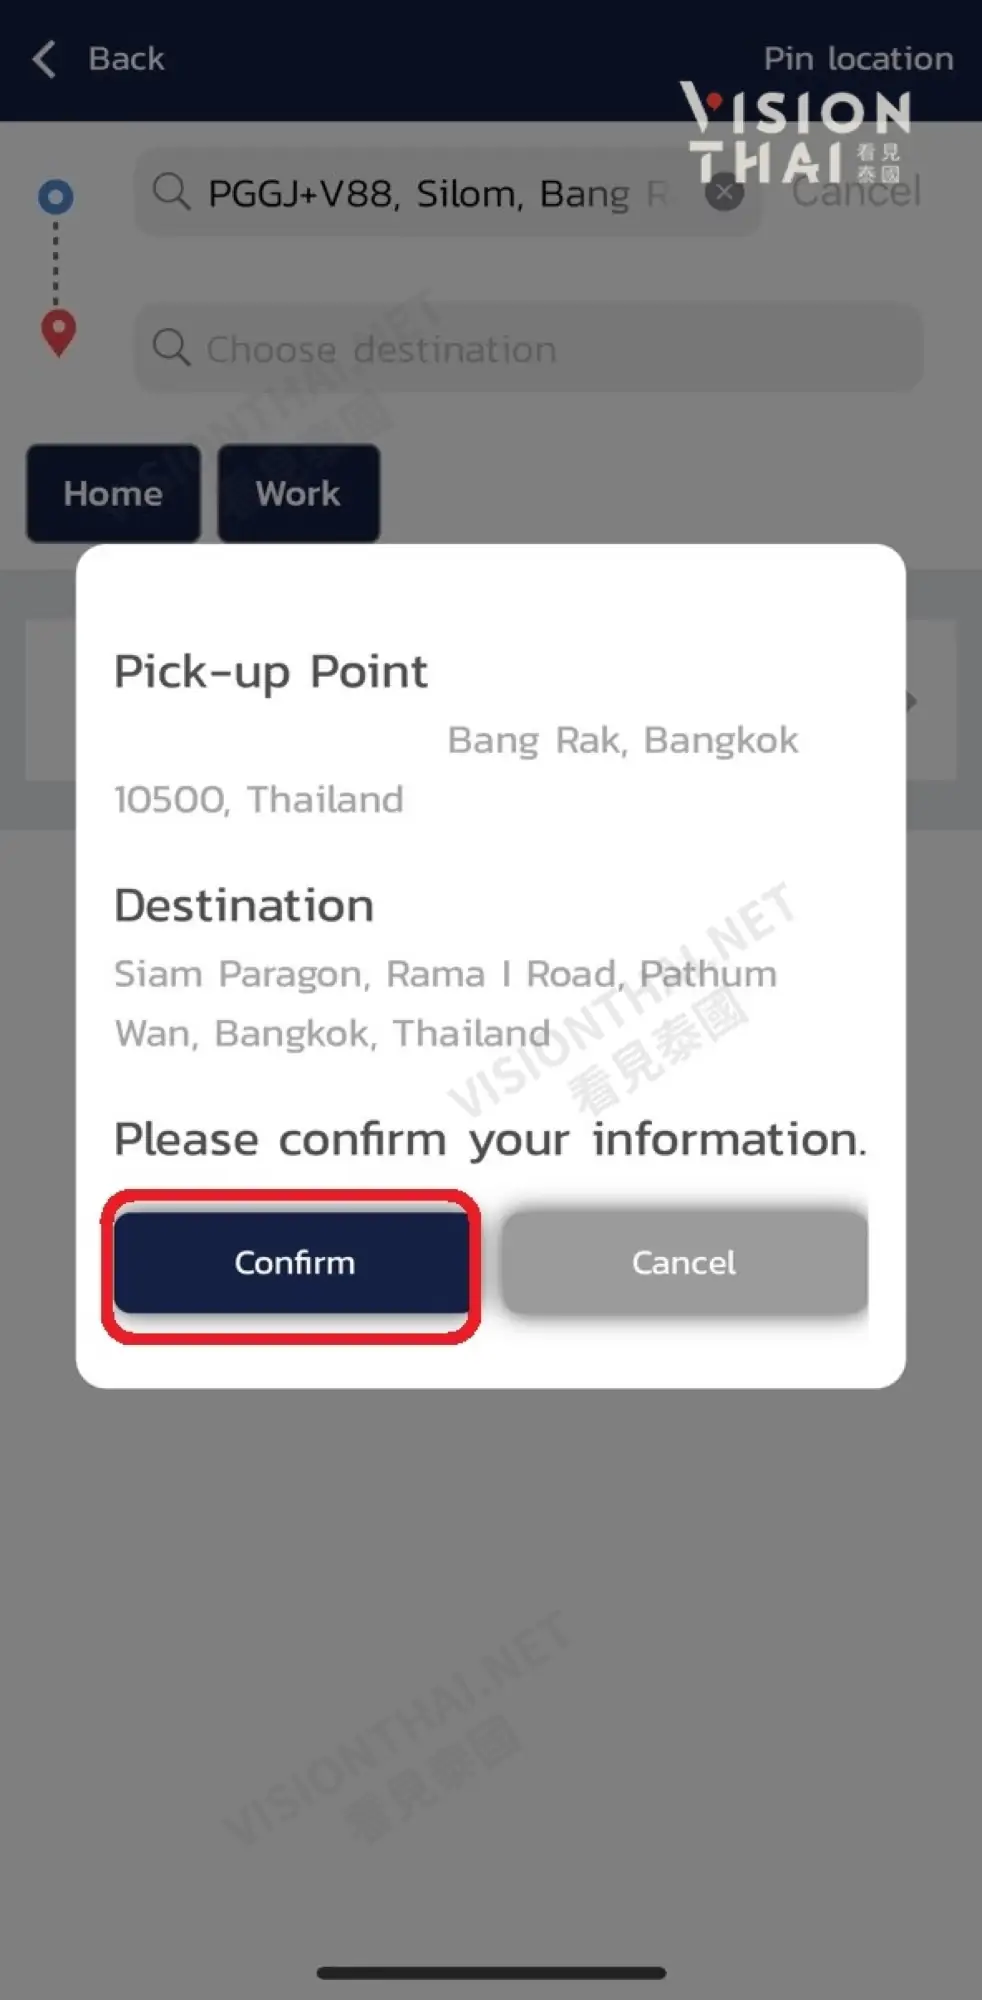 泰国打车App CABB使用教学（图片来源：Vision Thai 看见泰国）